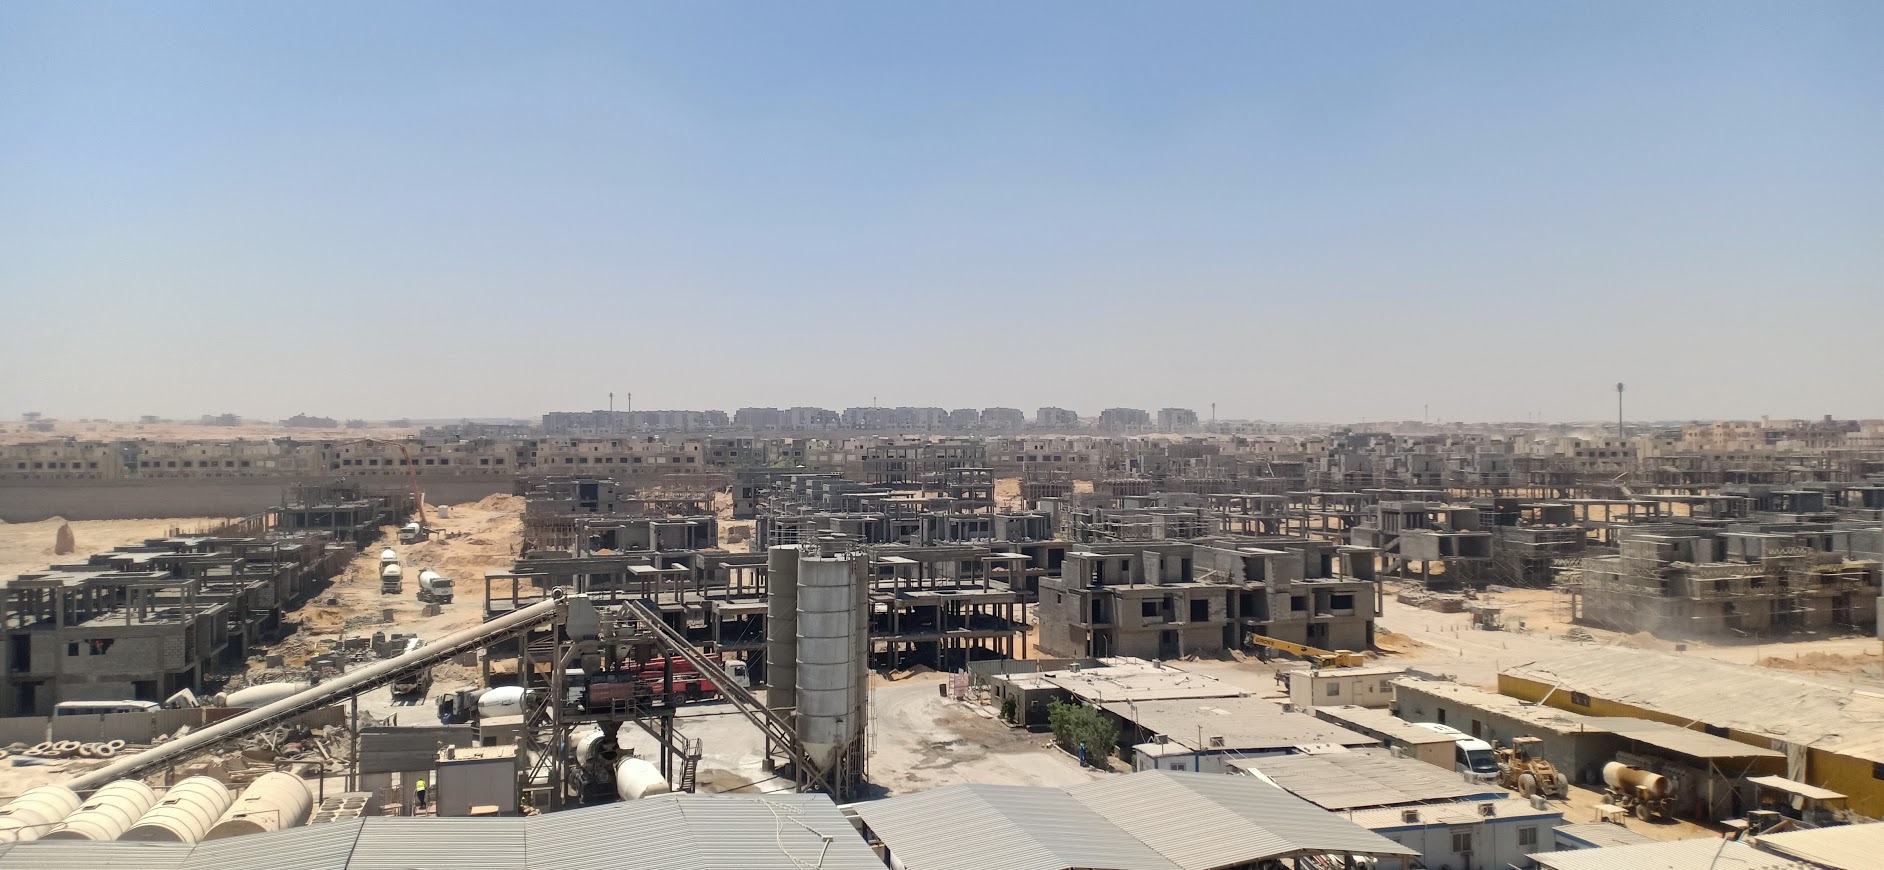 Fifth Square Compound New Cairo – Al Marasem Fifth Square